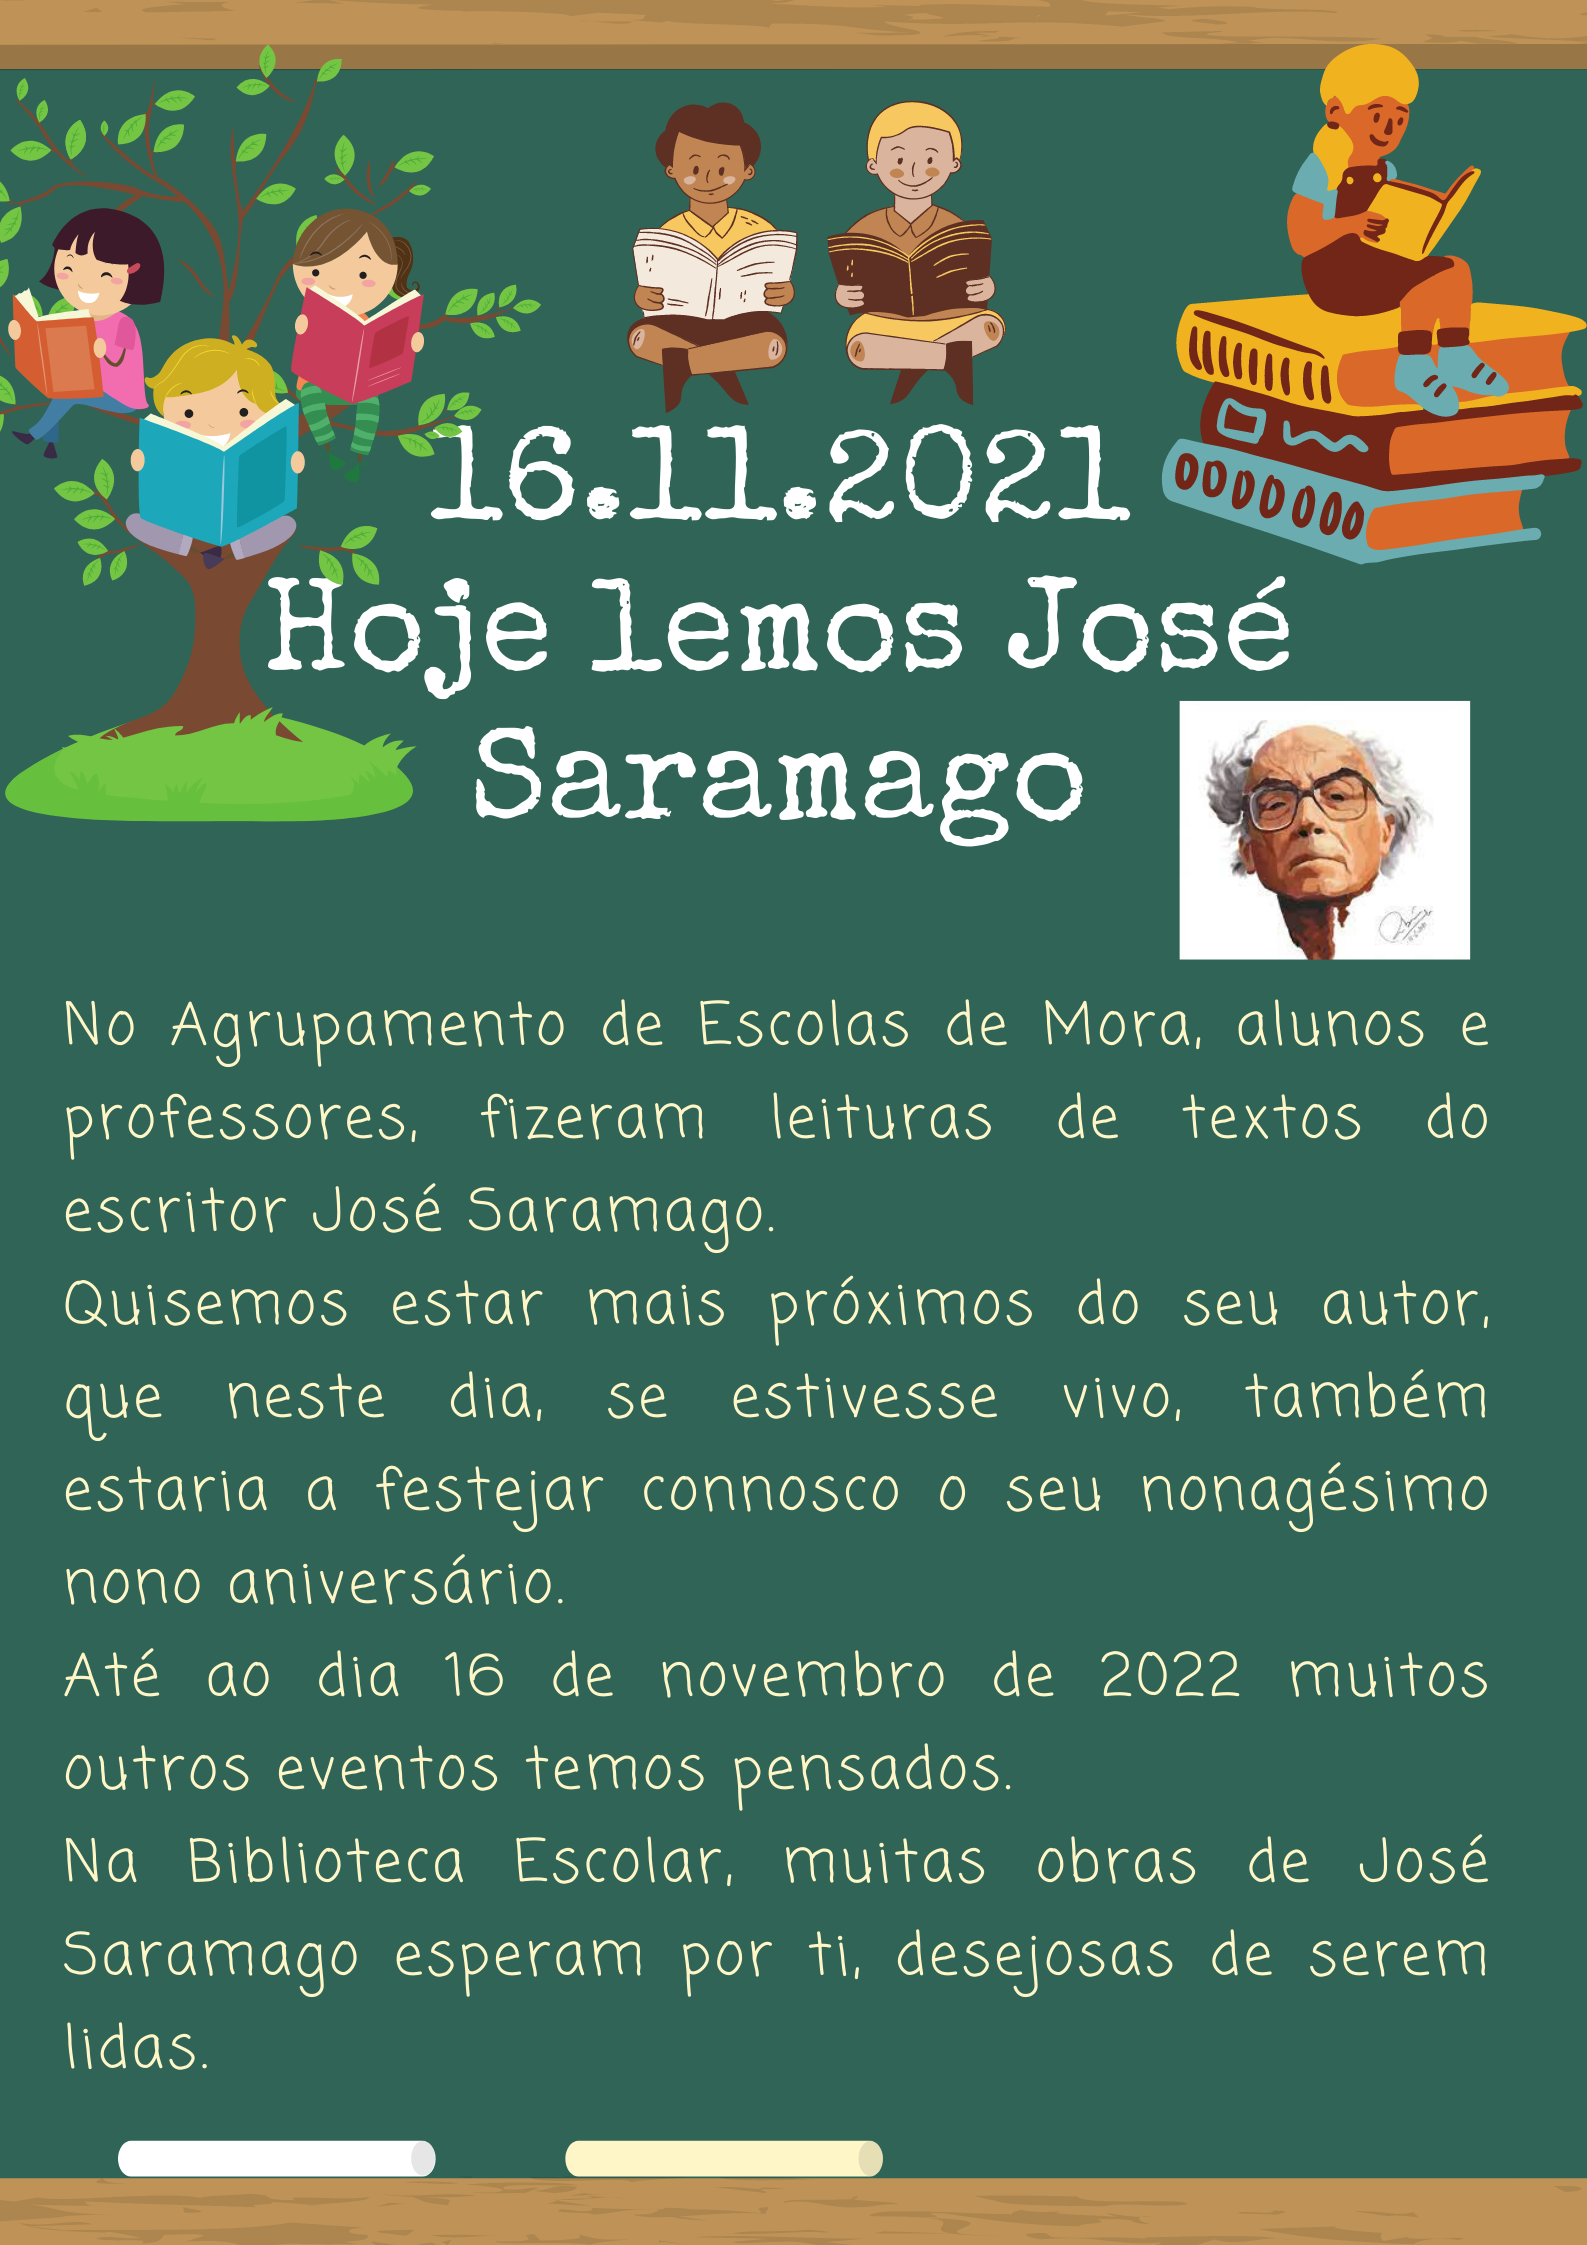 Hoje lemos José Saramago